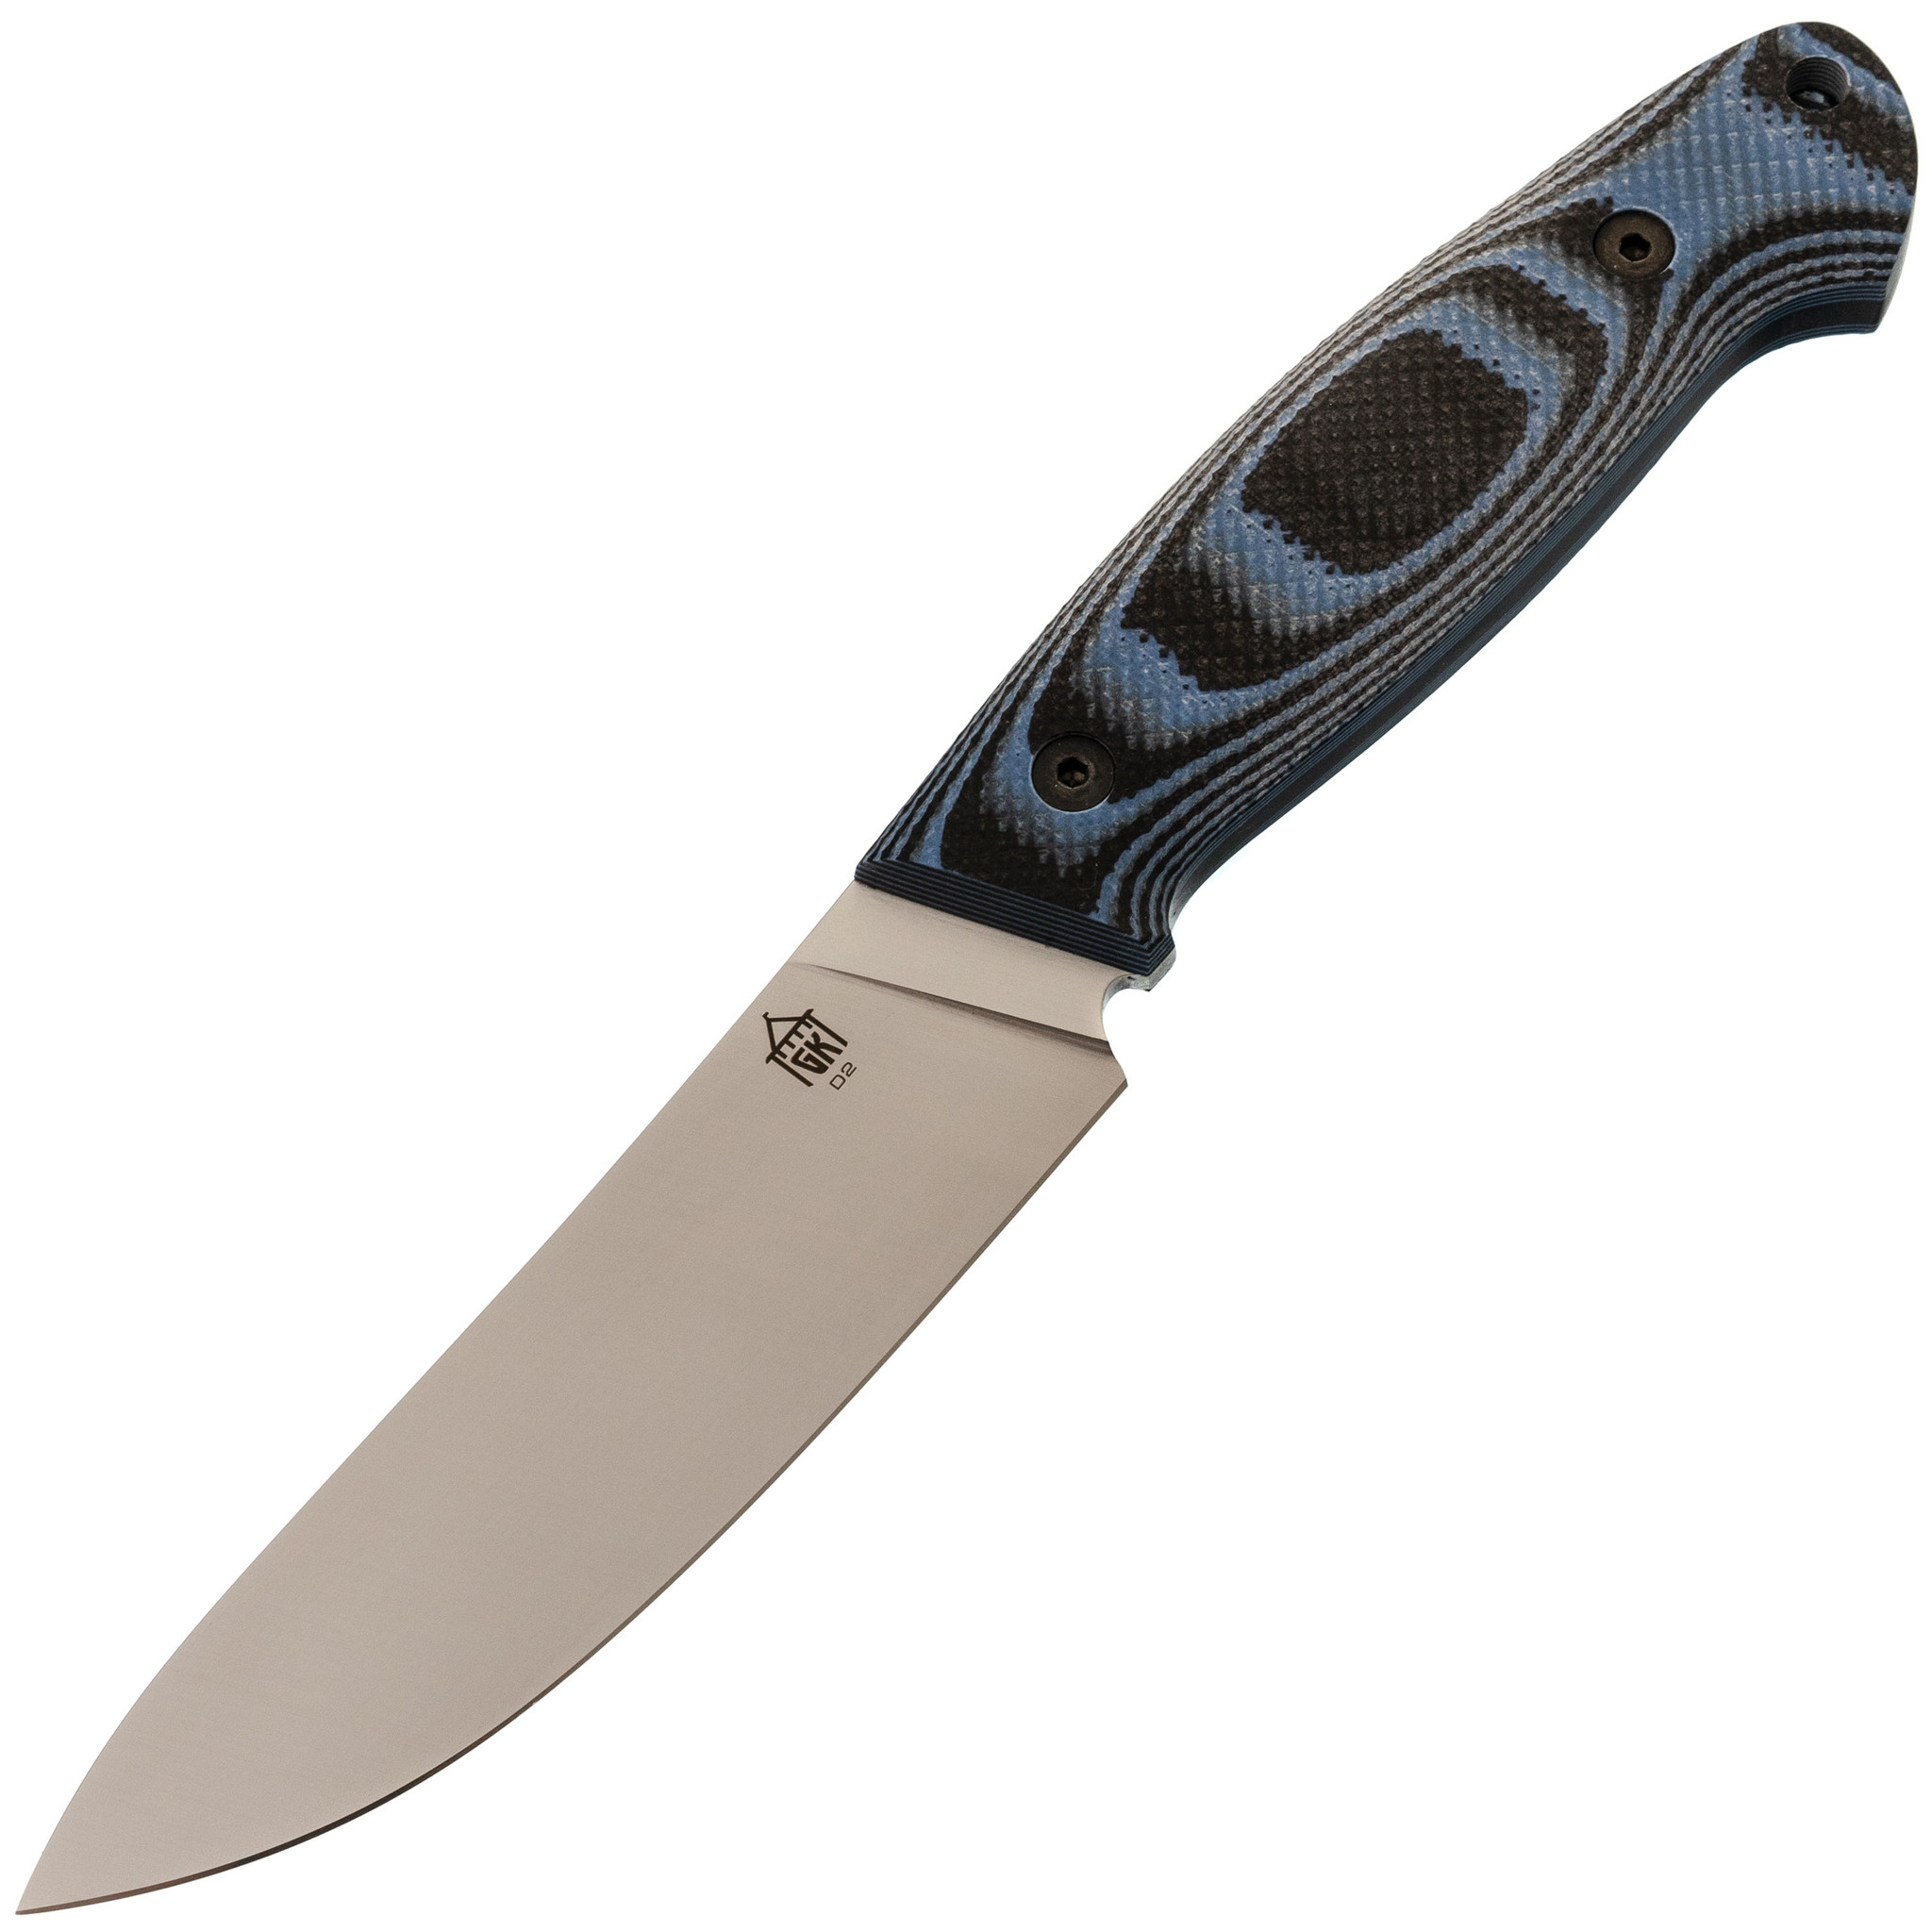 Нож Охотник, сталь D2, рукоять G10 черно-синяя нож складной al mar nomad kirk rexroat design сталь vg 10 рукоять стеклотекстолит g 10